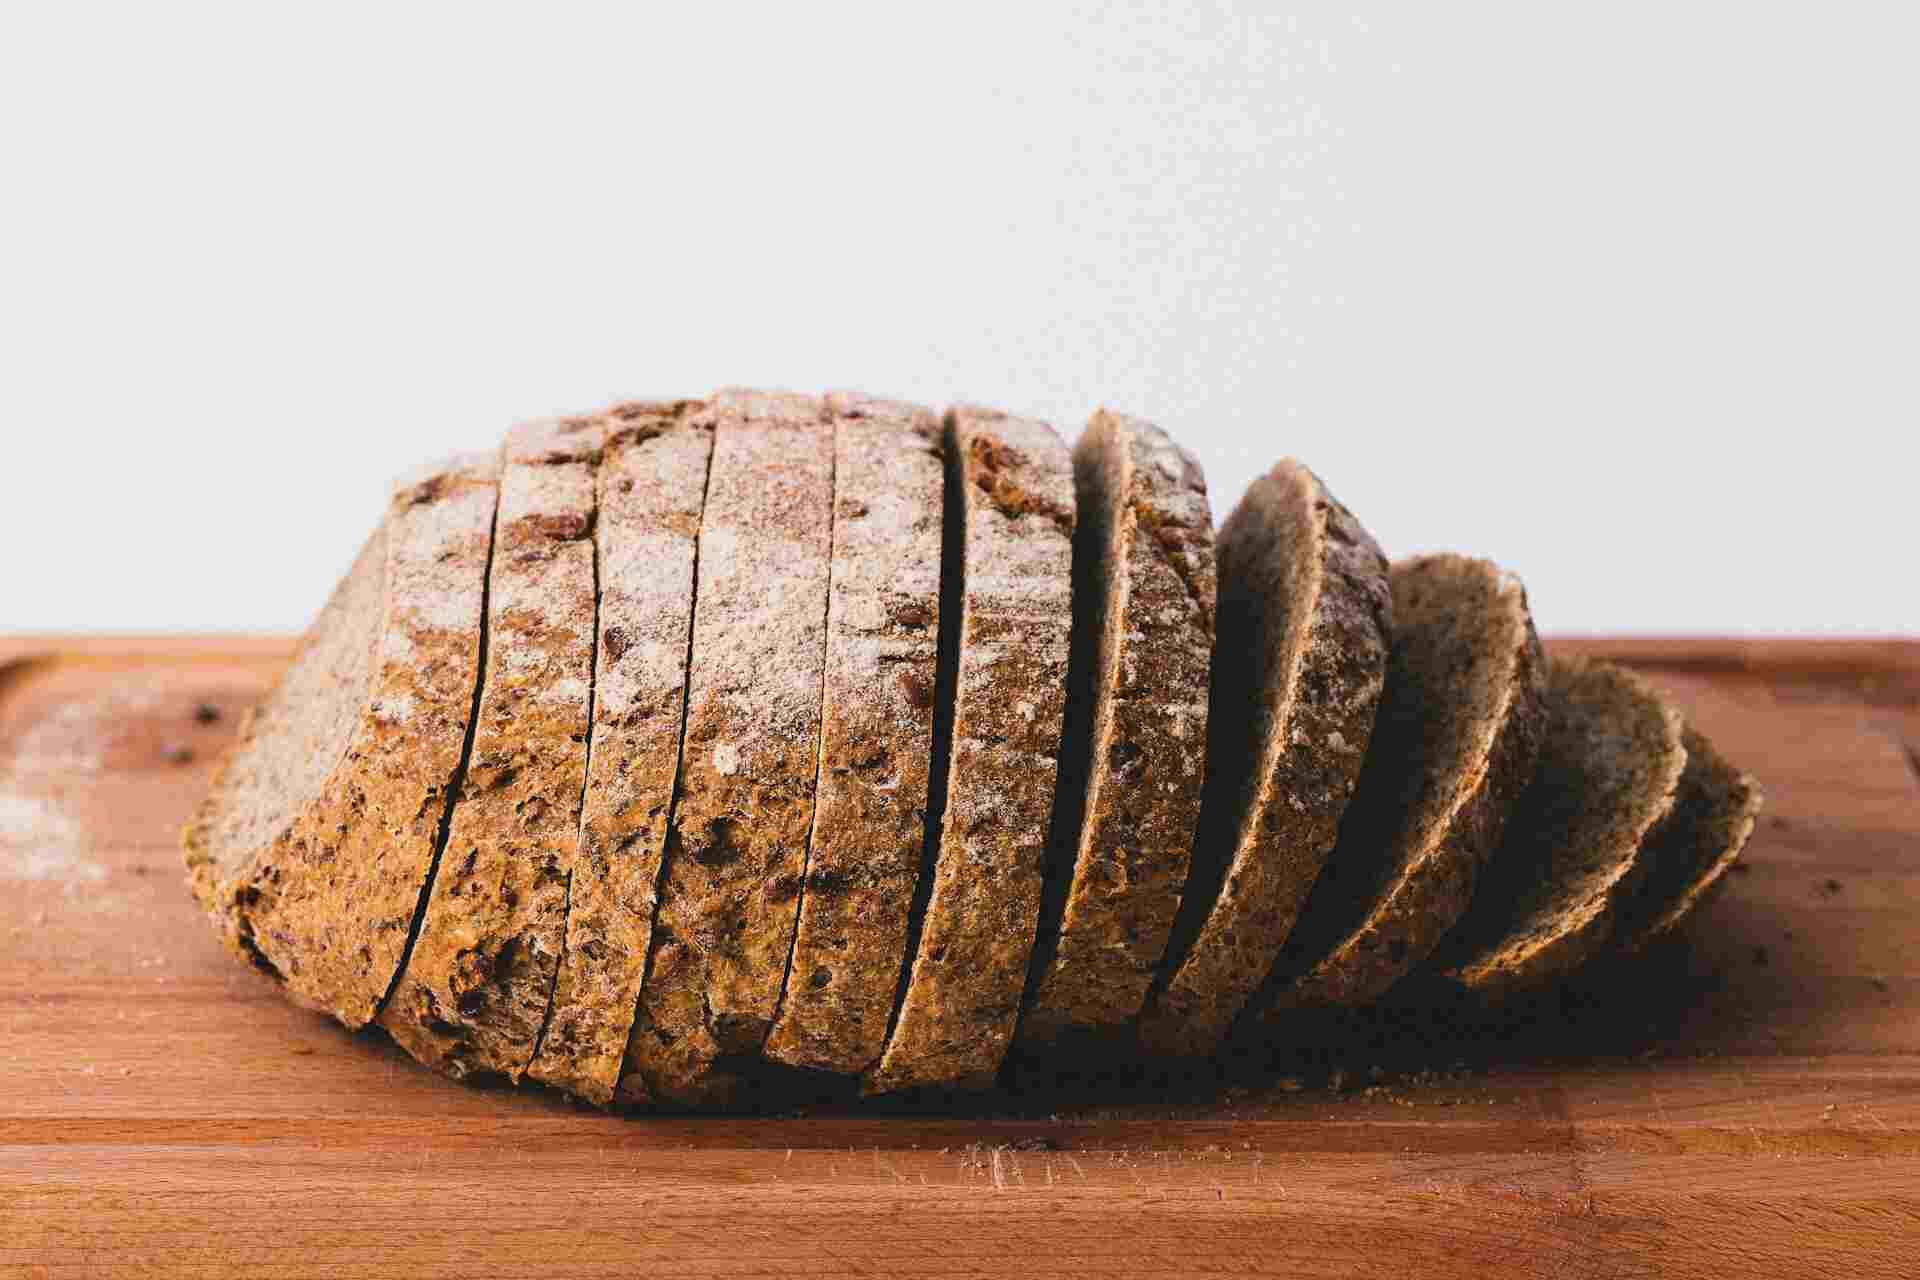 The Conversation: хранение хлеба в морозилке делает его полезней